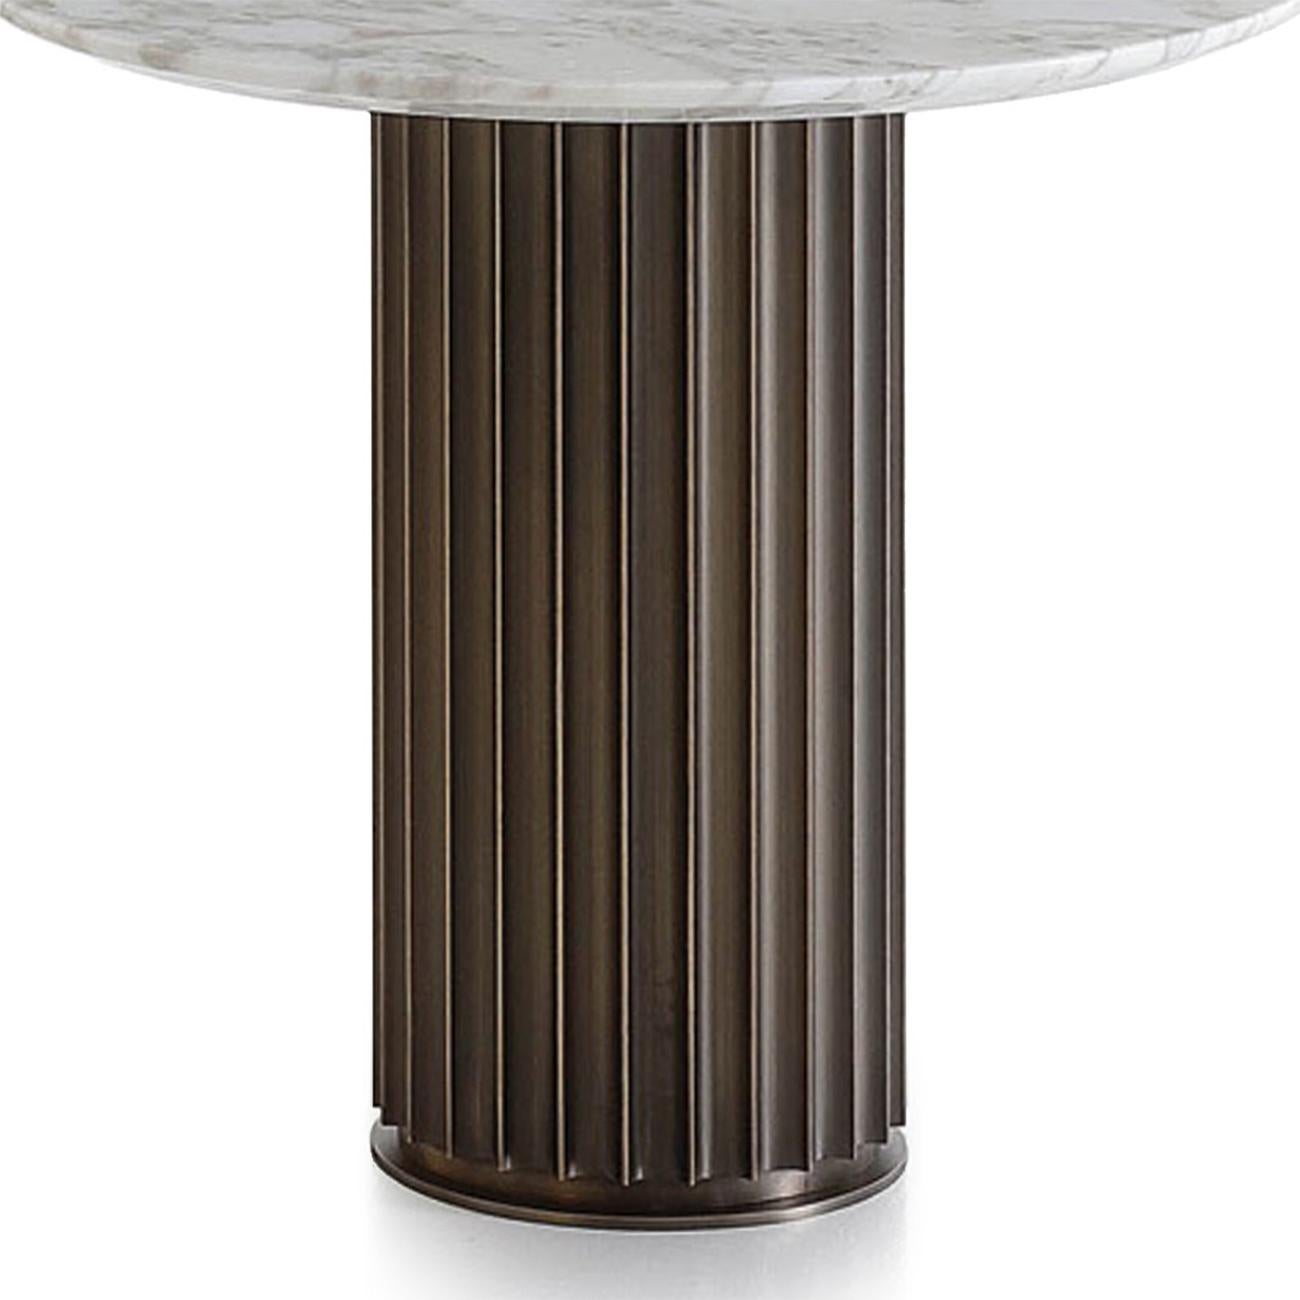 Table d'appoint colisée bronze marbre calacatta
diamètre 50cm x hauteur 48cm, prix : 4150,00€. 
Egalement disponible en diamètre 60cm x hauteur 48cm, prix : 4350,00€.
Également disponible avec une base en bronze massif et un plateau rond en